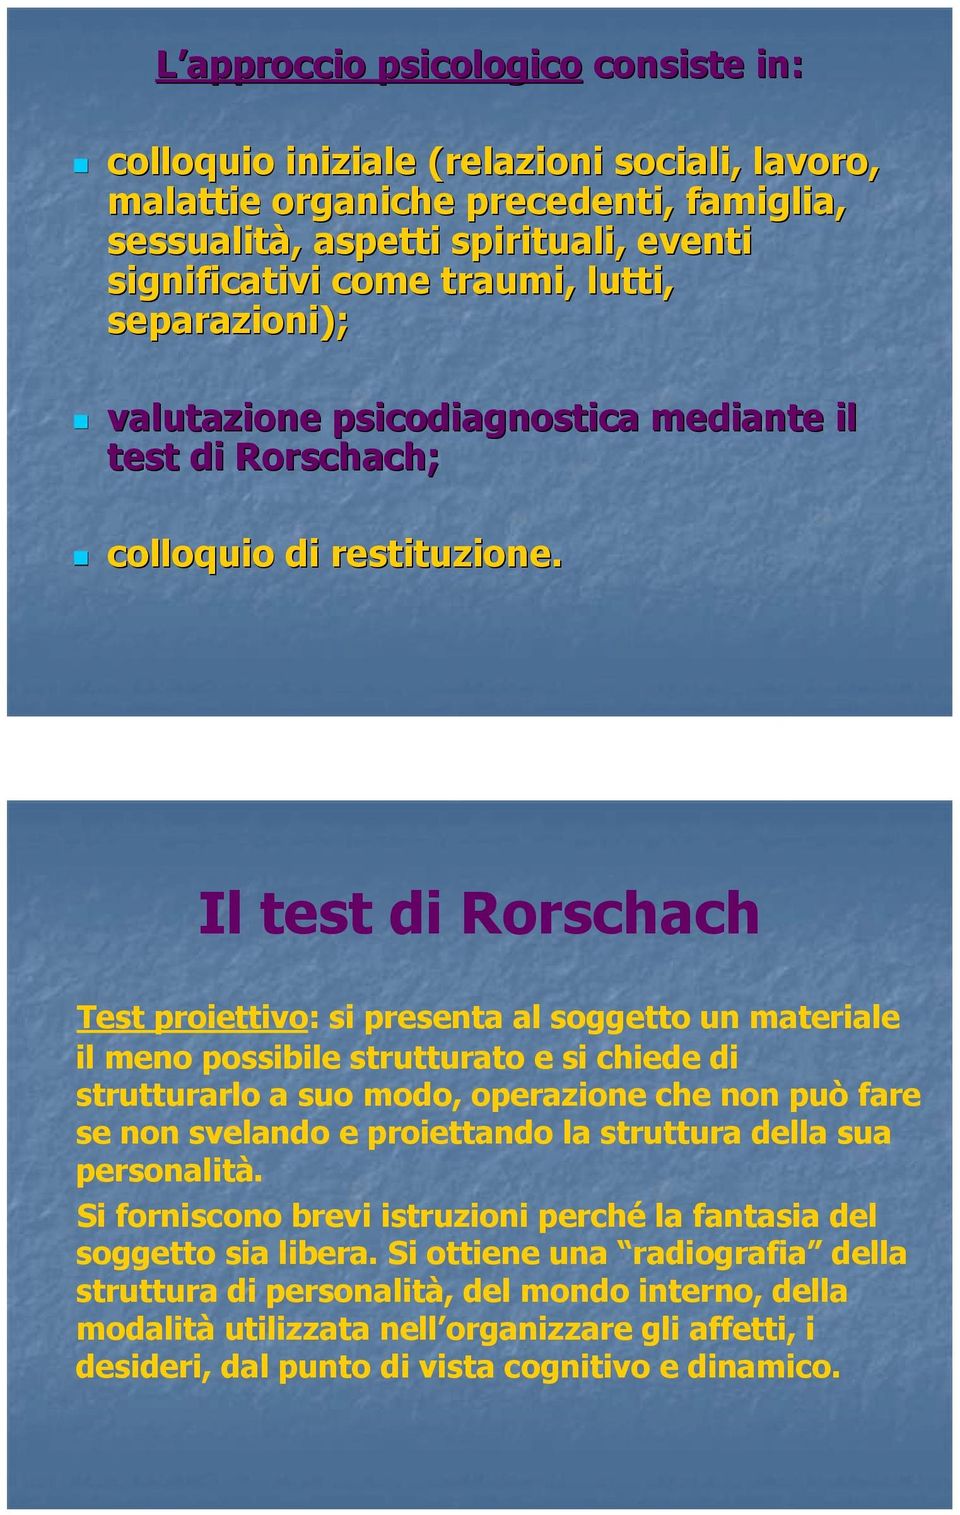 Il test di Rorschach Test proiettivo: si presenta al soggetto un materiale il meno possibile strutturato e si chiede di strutturarlo a suo modo, operazione che non può fare se non svelando e